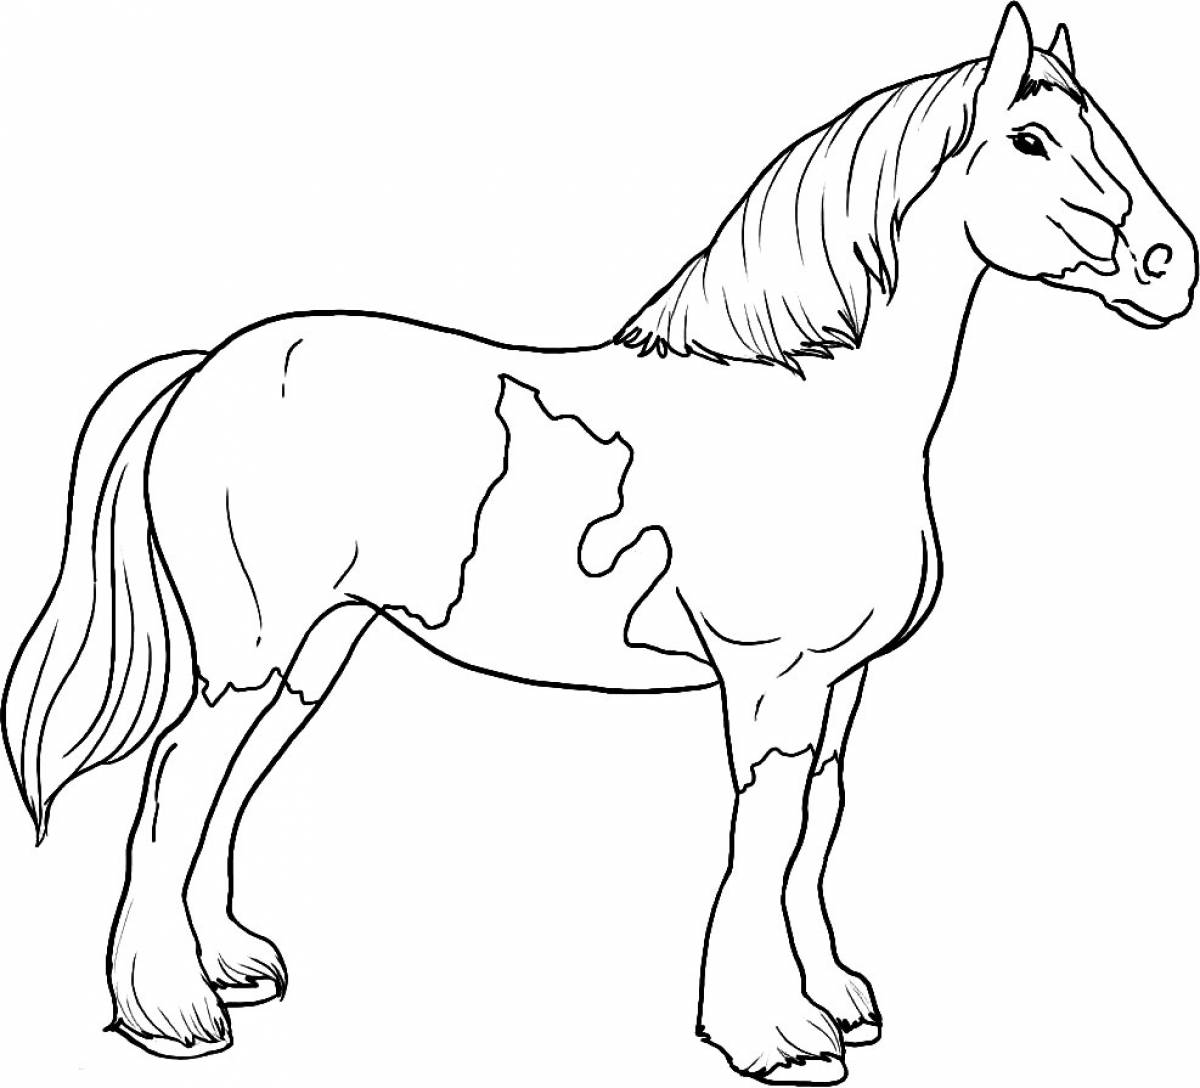 Раскрасить лошадку. Раскраска. Лошади. Картинки для раскрашивания лошадки. Лошадь раскраска для детей. Лошадь картинка для детей раскраска.